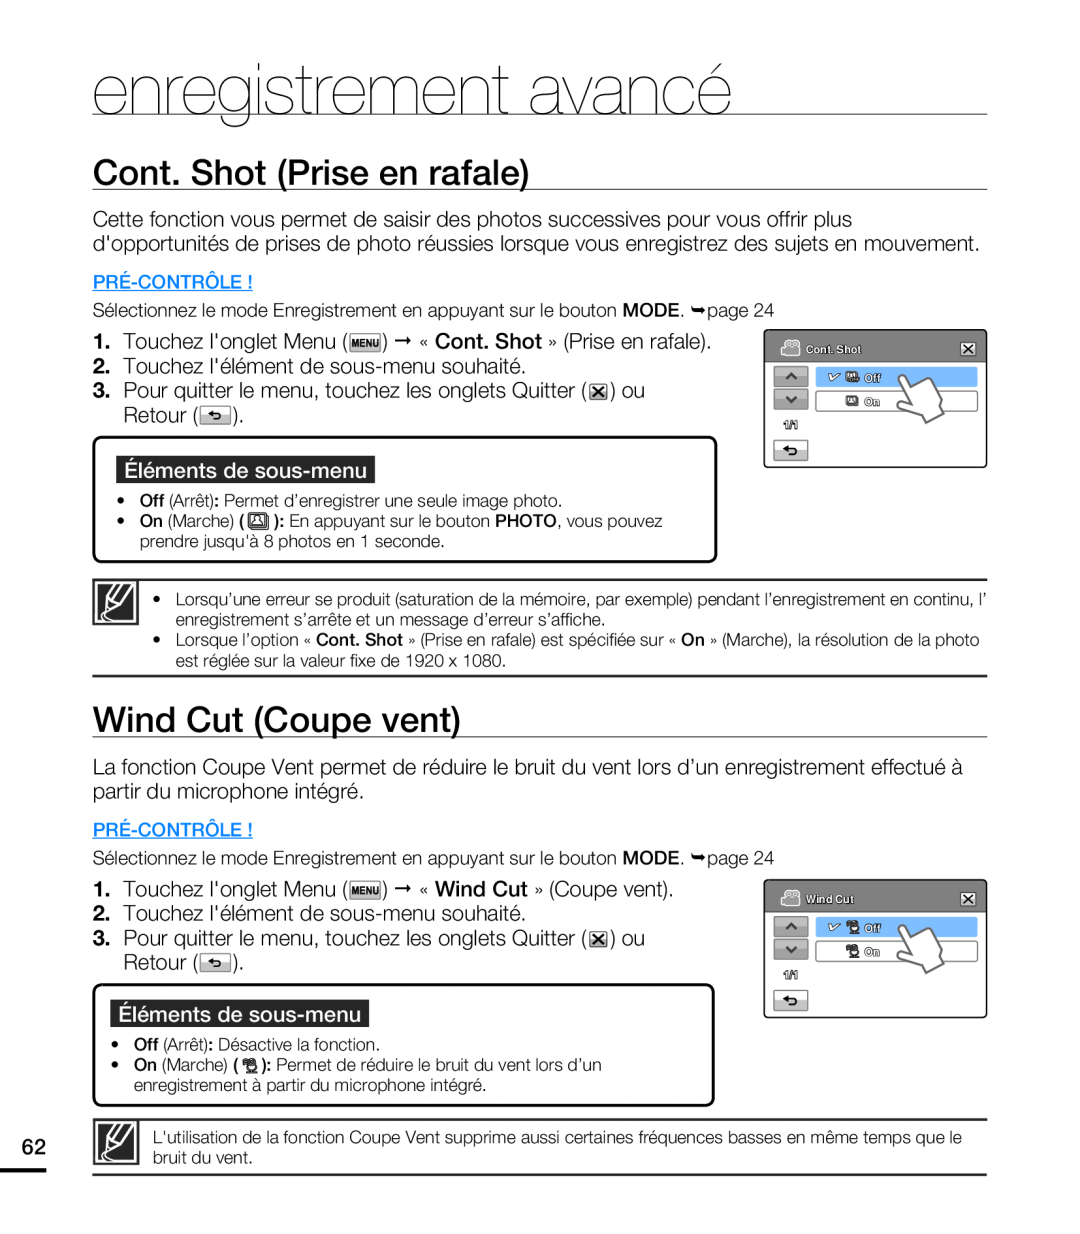 Samsung HMX-T10WP/EDC manual Cont. Shot Prise en rafale, Wind Cut Coupe vent, enregistrement avancé, Éléments de sous-menu 